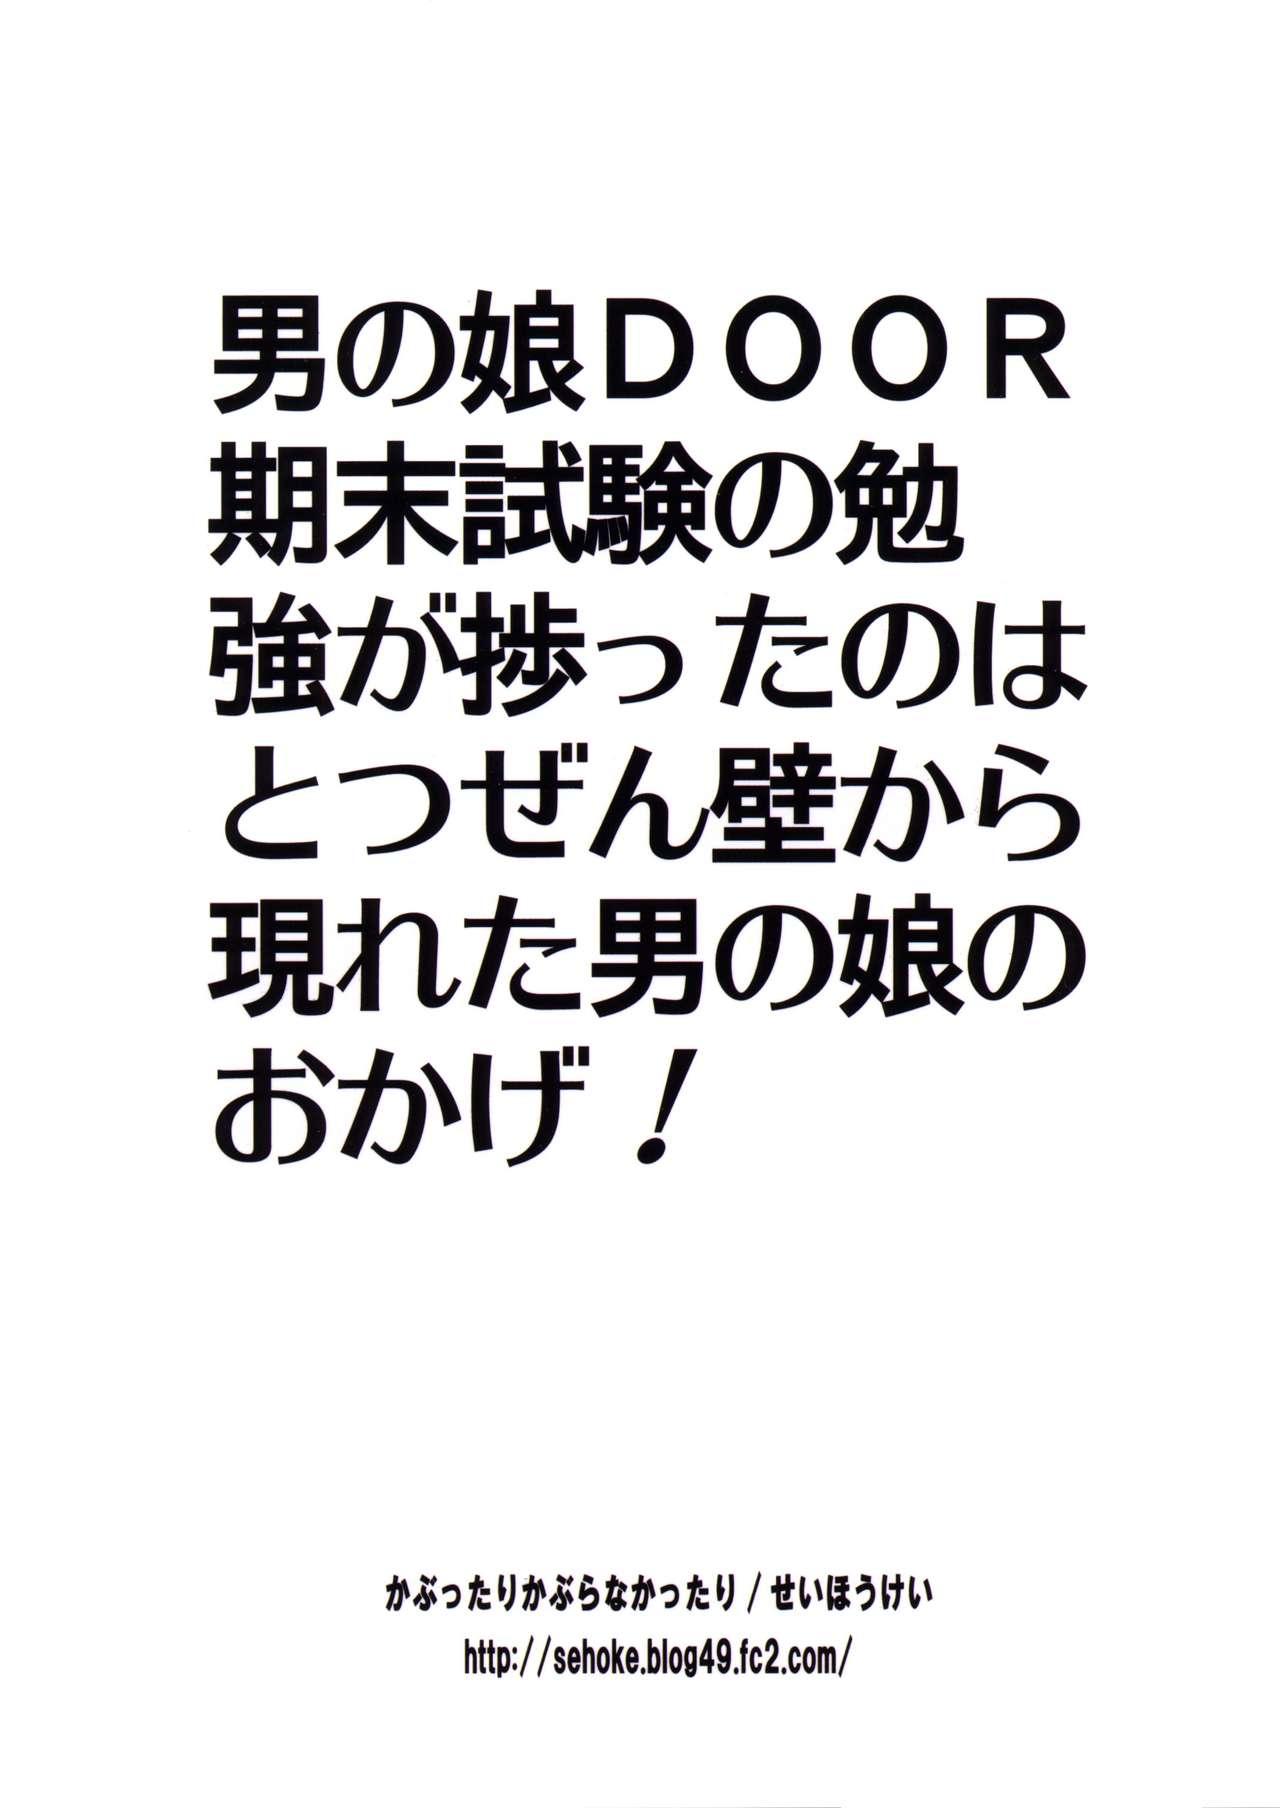 Otokonoko DOOR 26